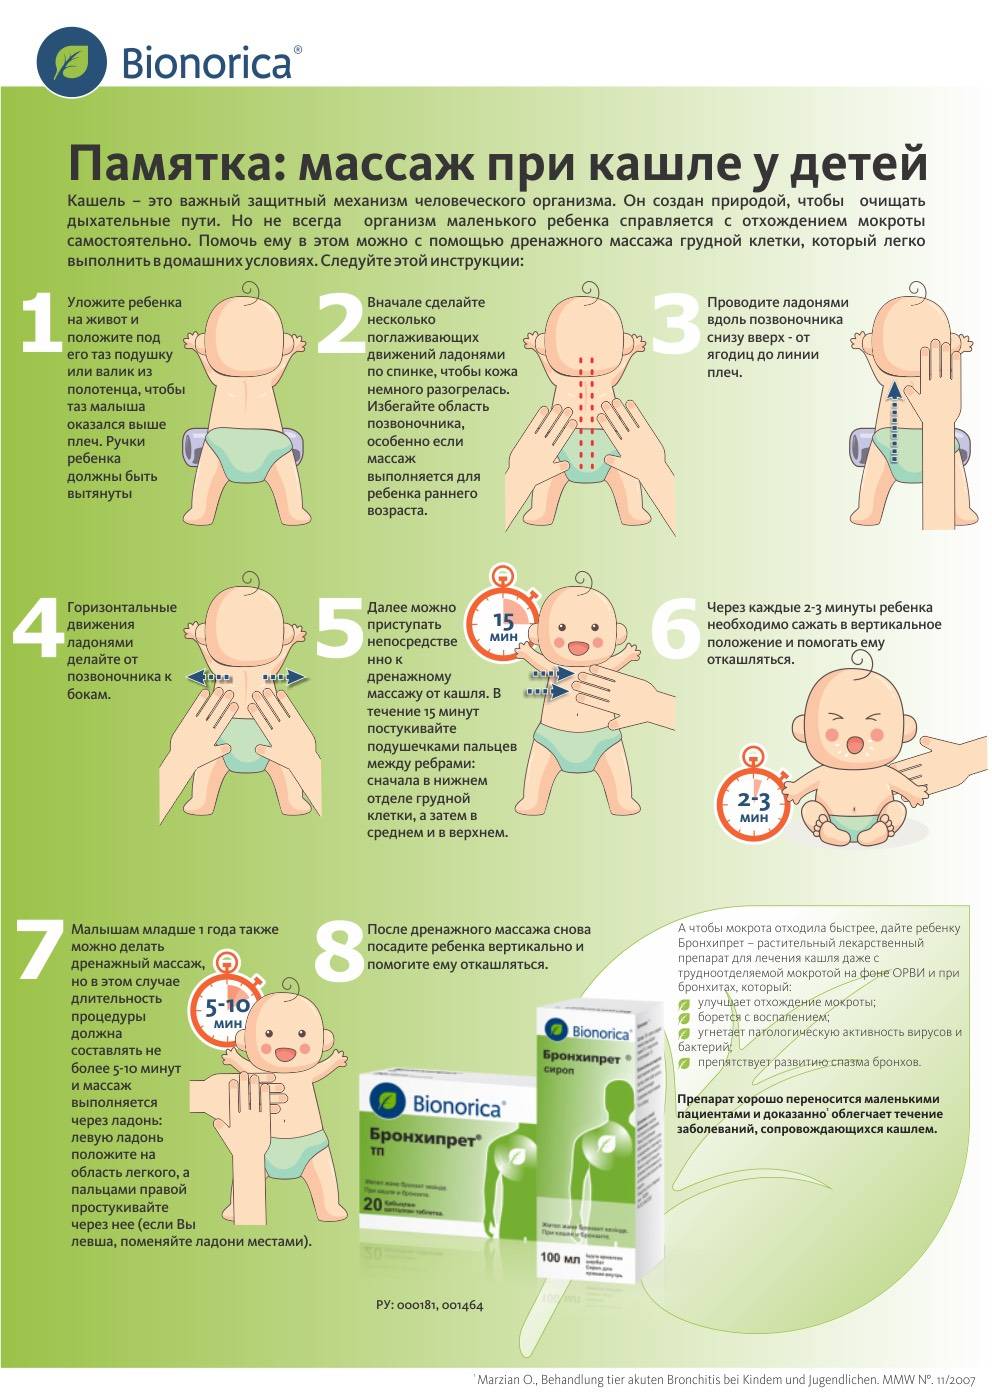 Как помочь ребёнку откашлять мокроту pulmono.ru
как помочь ребёнку откашлять мокроту